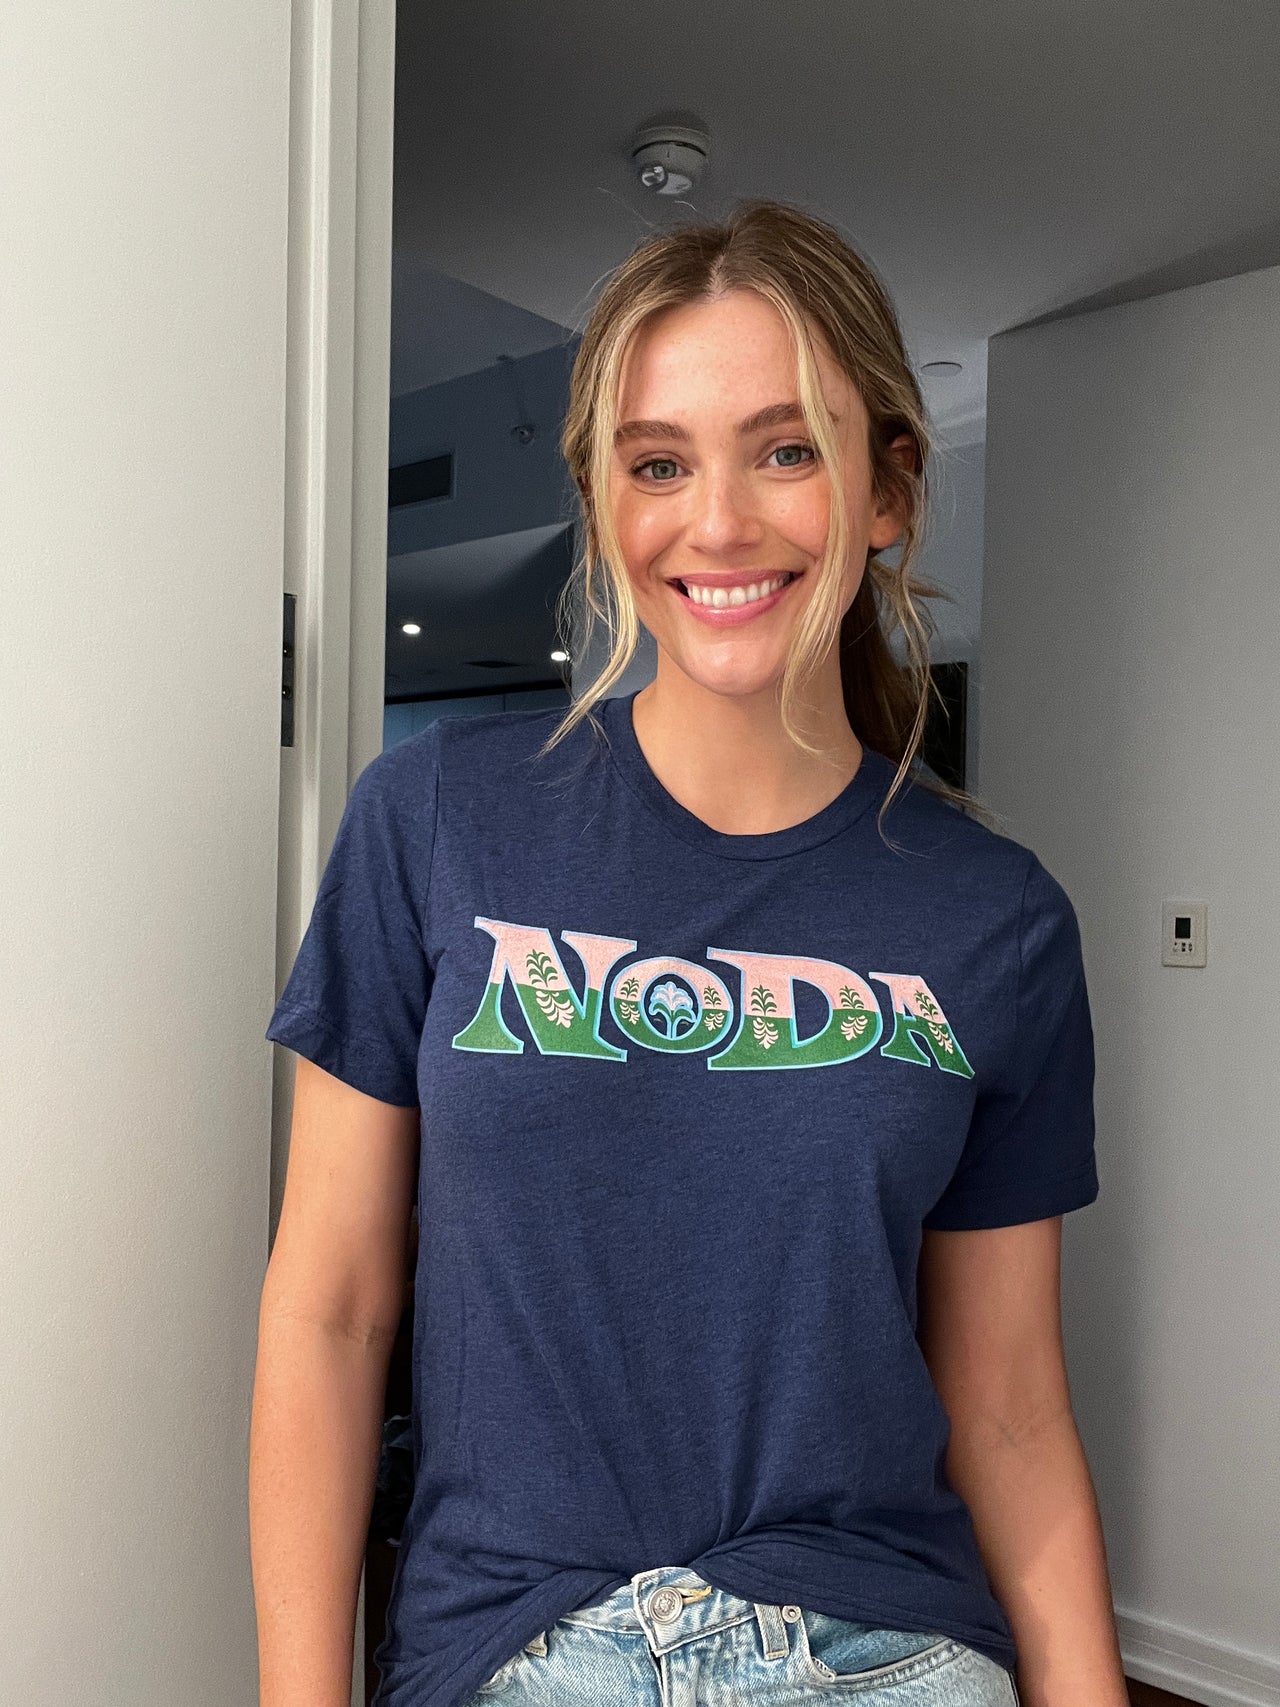 NoDa T Shirt